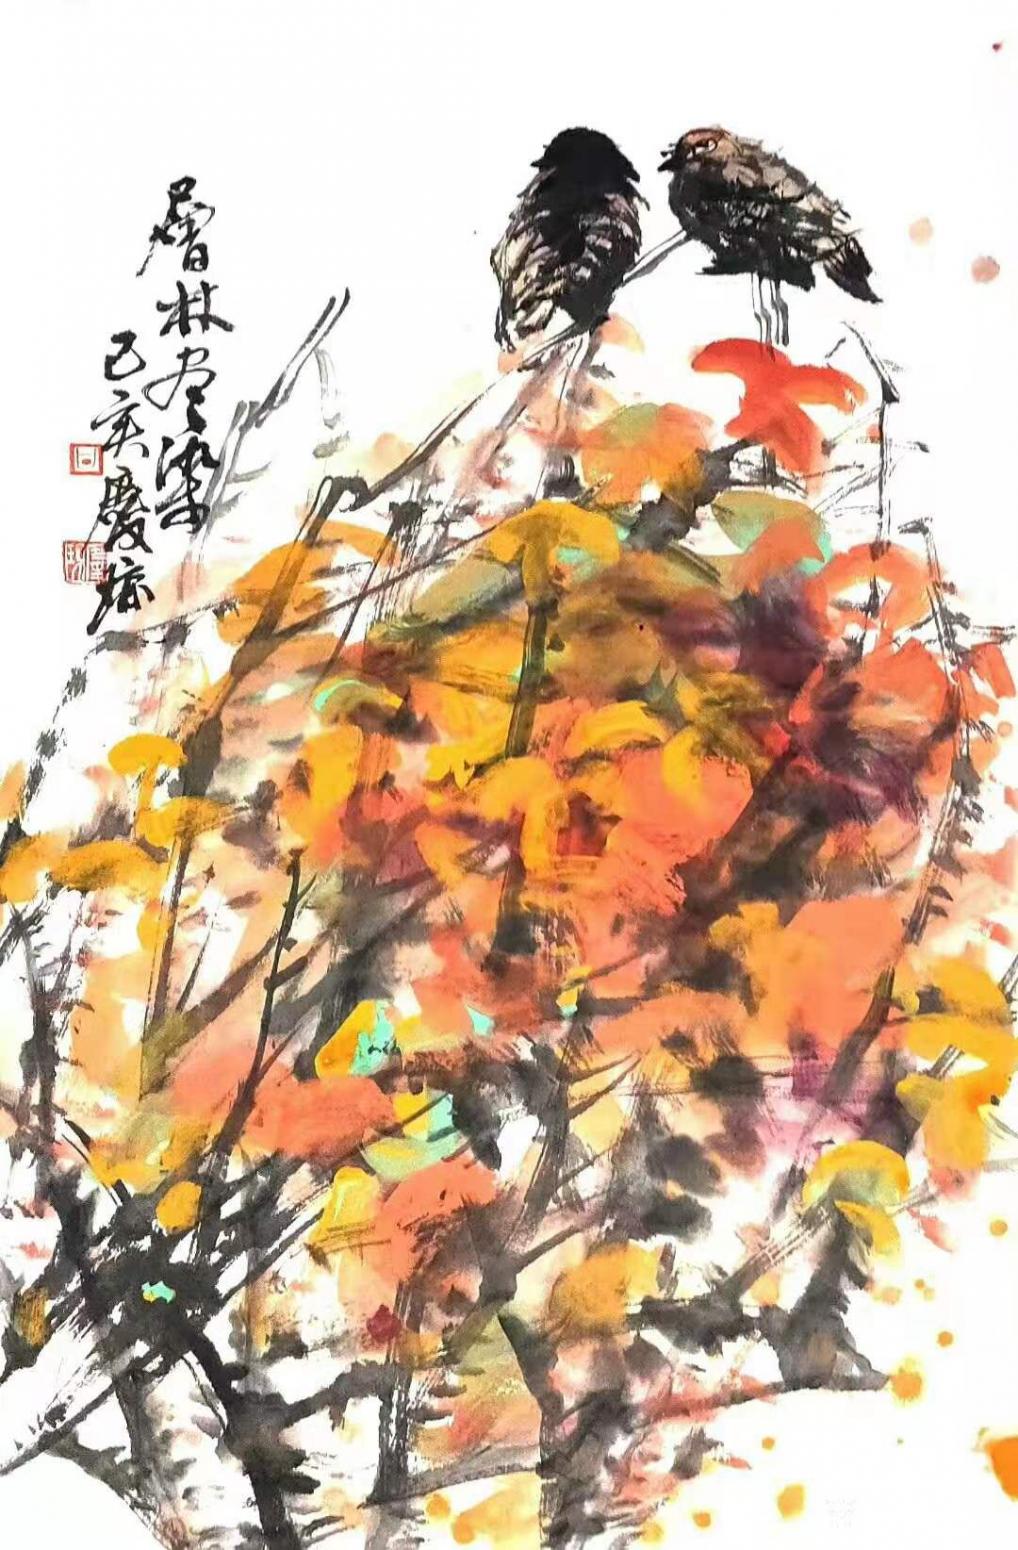 甘庆琼国画作品《花鸟画-层林尽染》